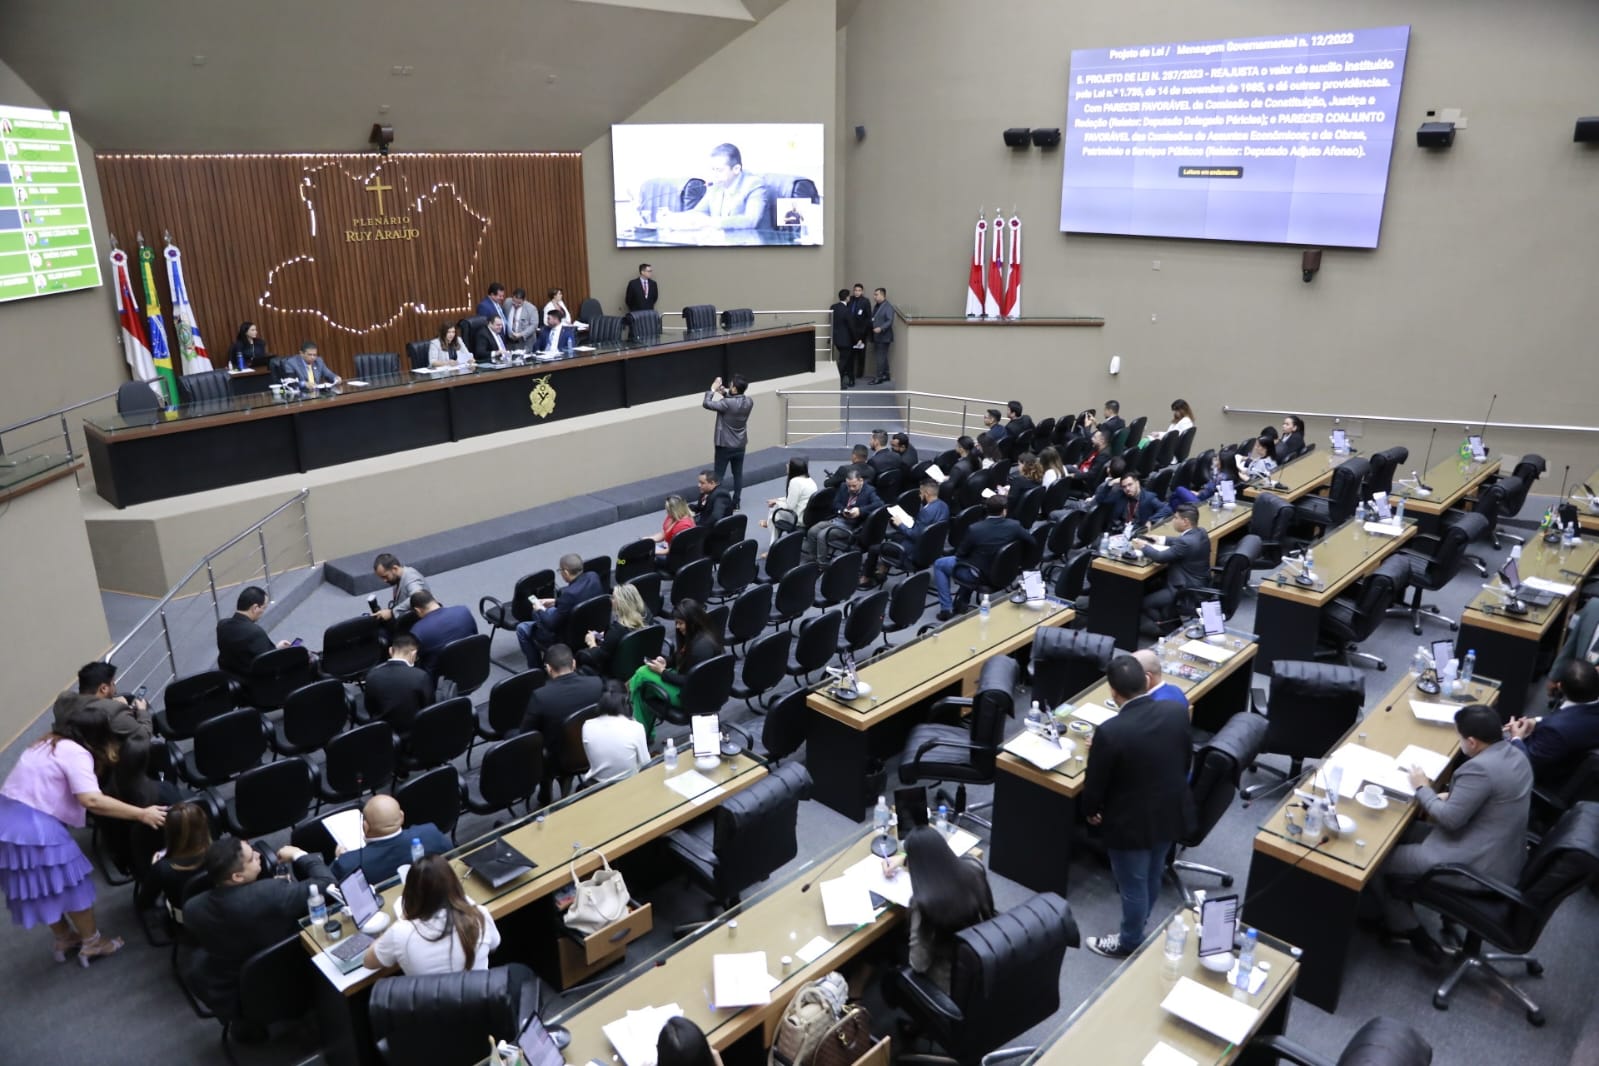 02 Assembleia Legislativa do Amazonas apresenta propostas para fortalecer a segurancCCA7a nas escolas